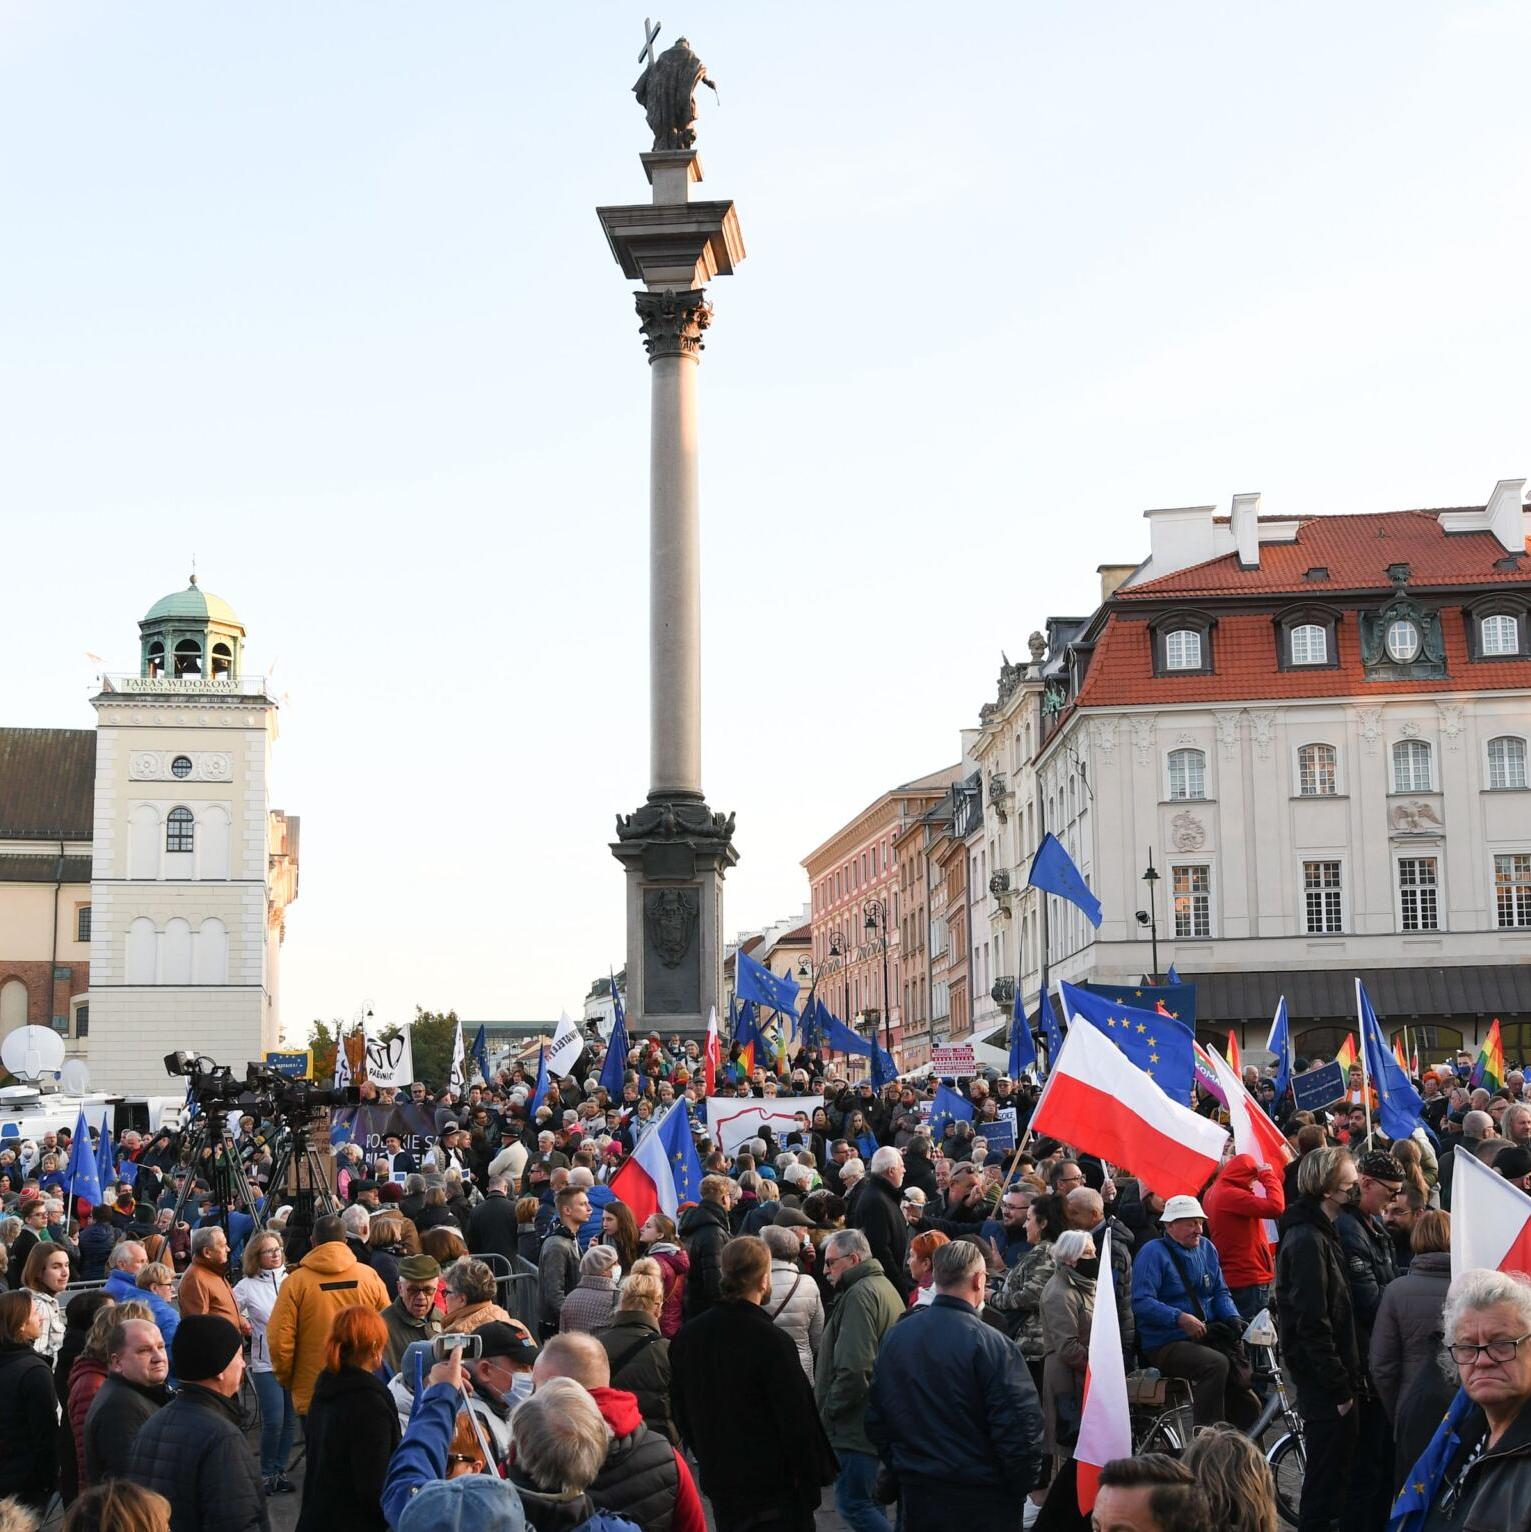 Warszawa, 10.10.2021. Zostajemy w UE – demonstracja na pl. Zamkowym